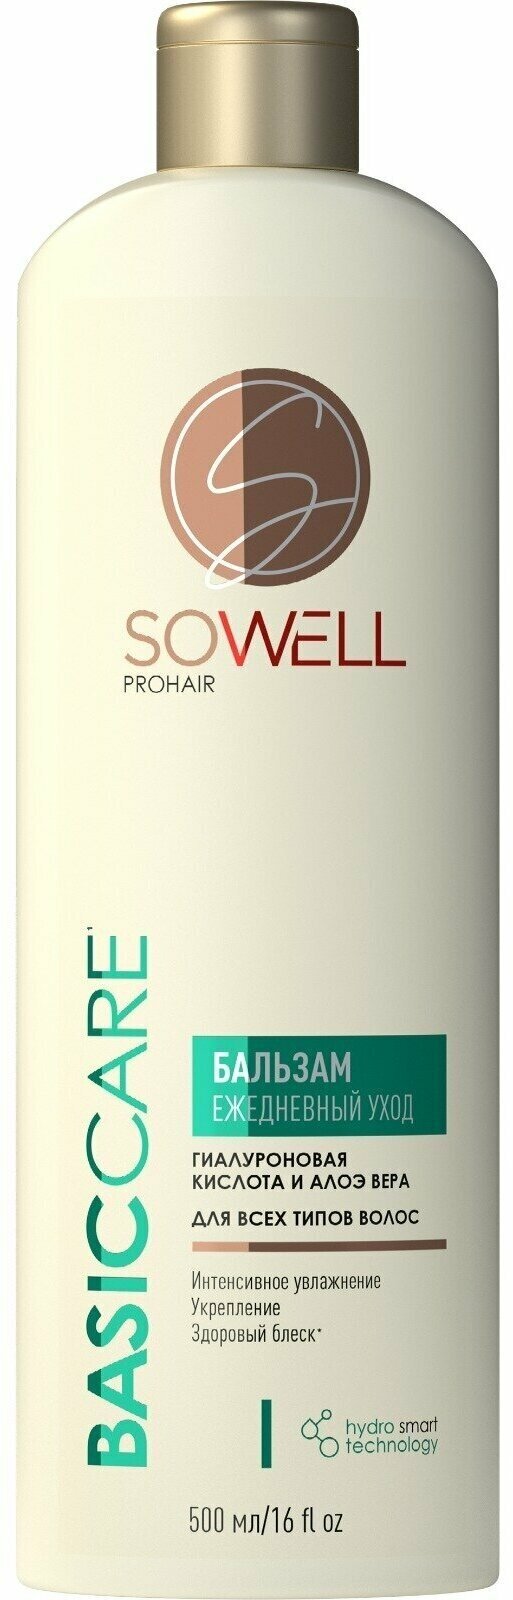 Набор из 3 штук SoWell 500 мл Ежедневный бальзам для всех типов волос Basic carе базовый уход